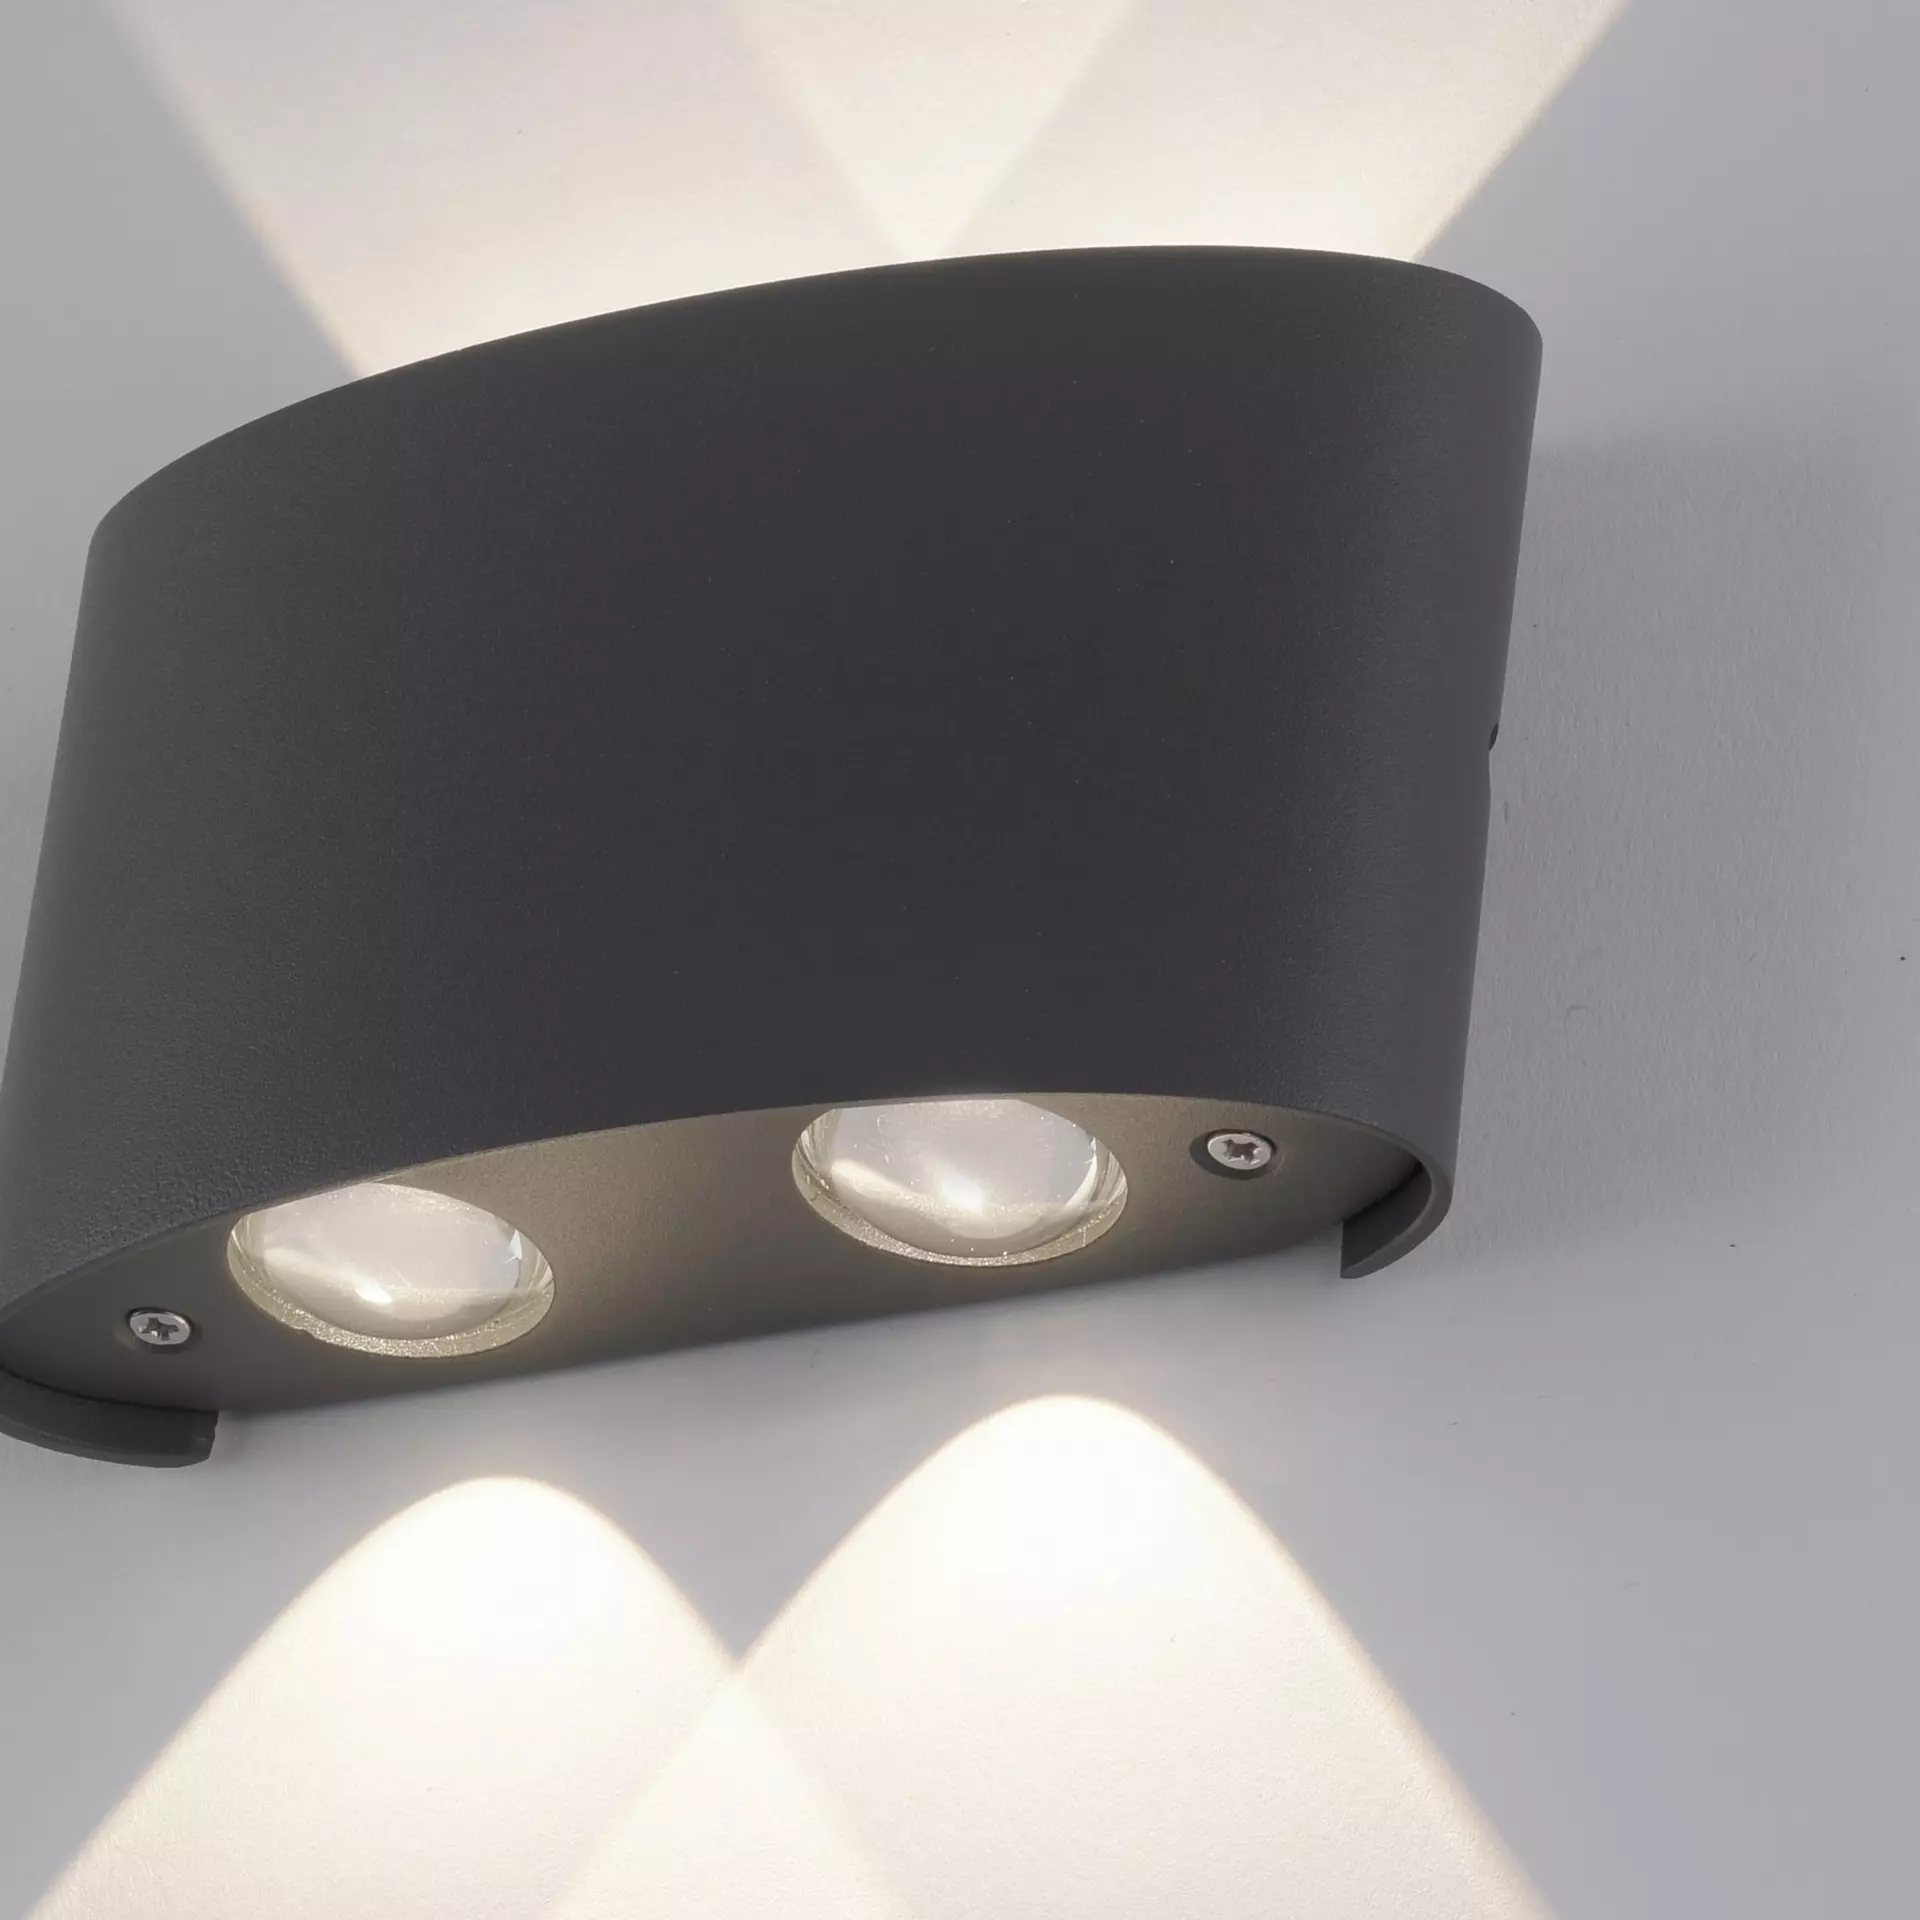 Wand-Aussenleuchte LED schwarz | Inhofer Möbel